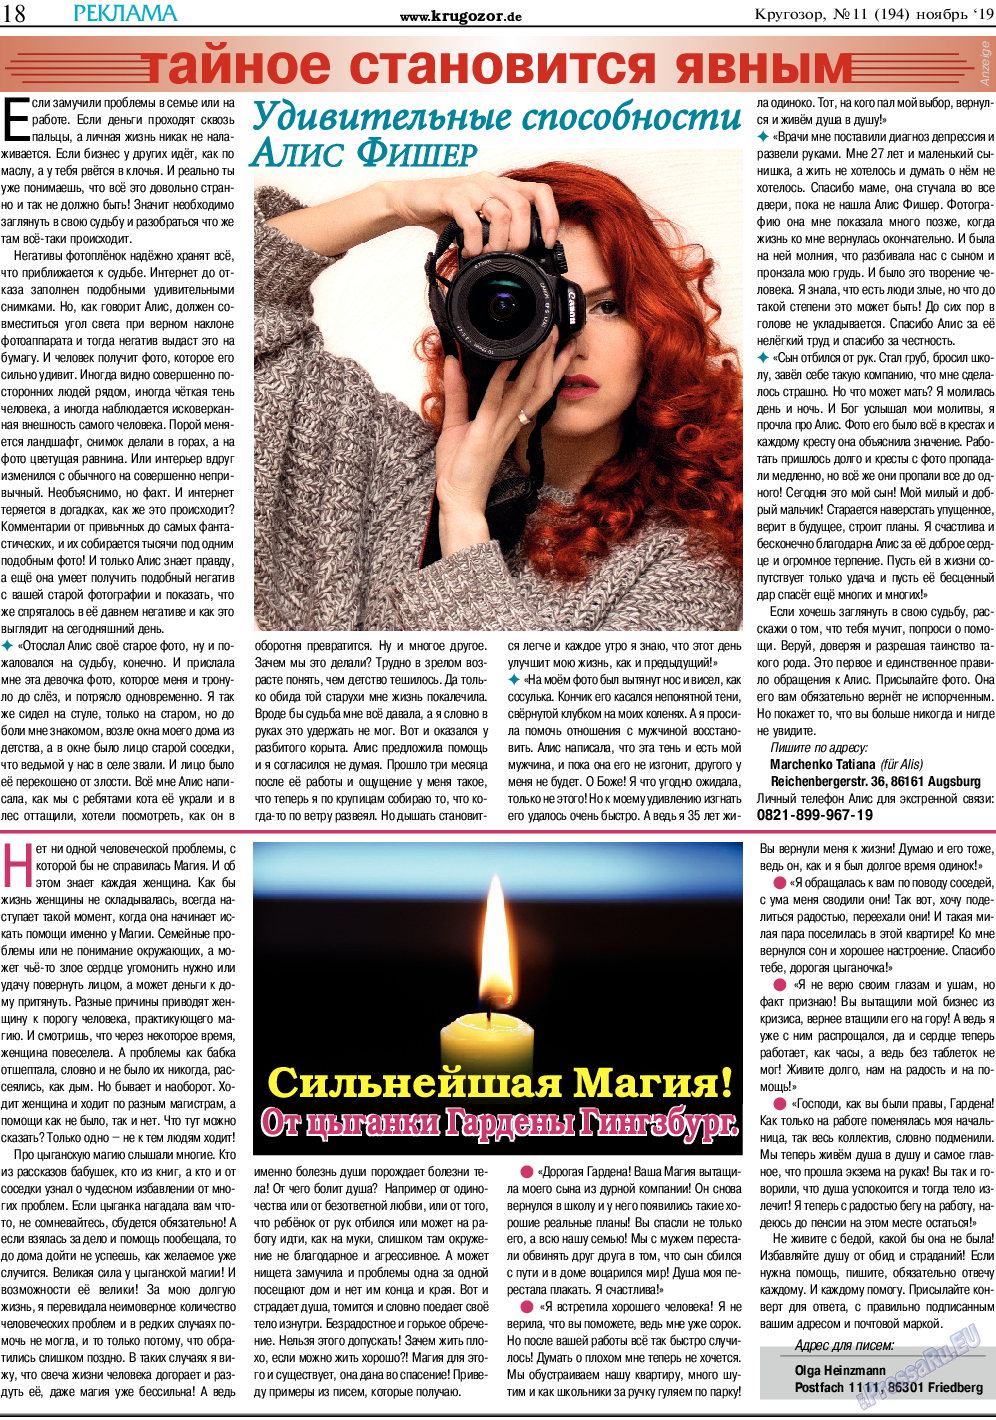 Кругозор (газета). 2019 год, номер 11, стр. 18